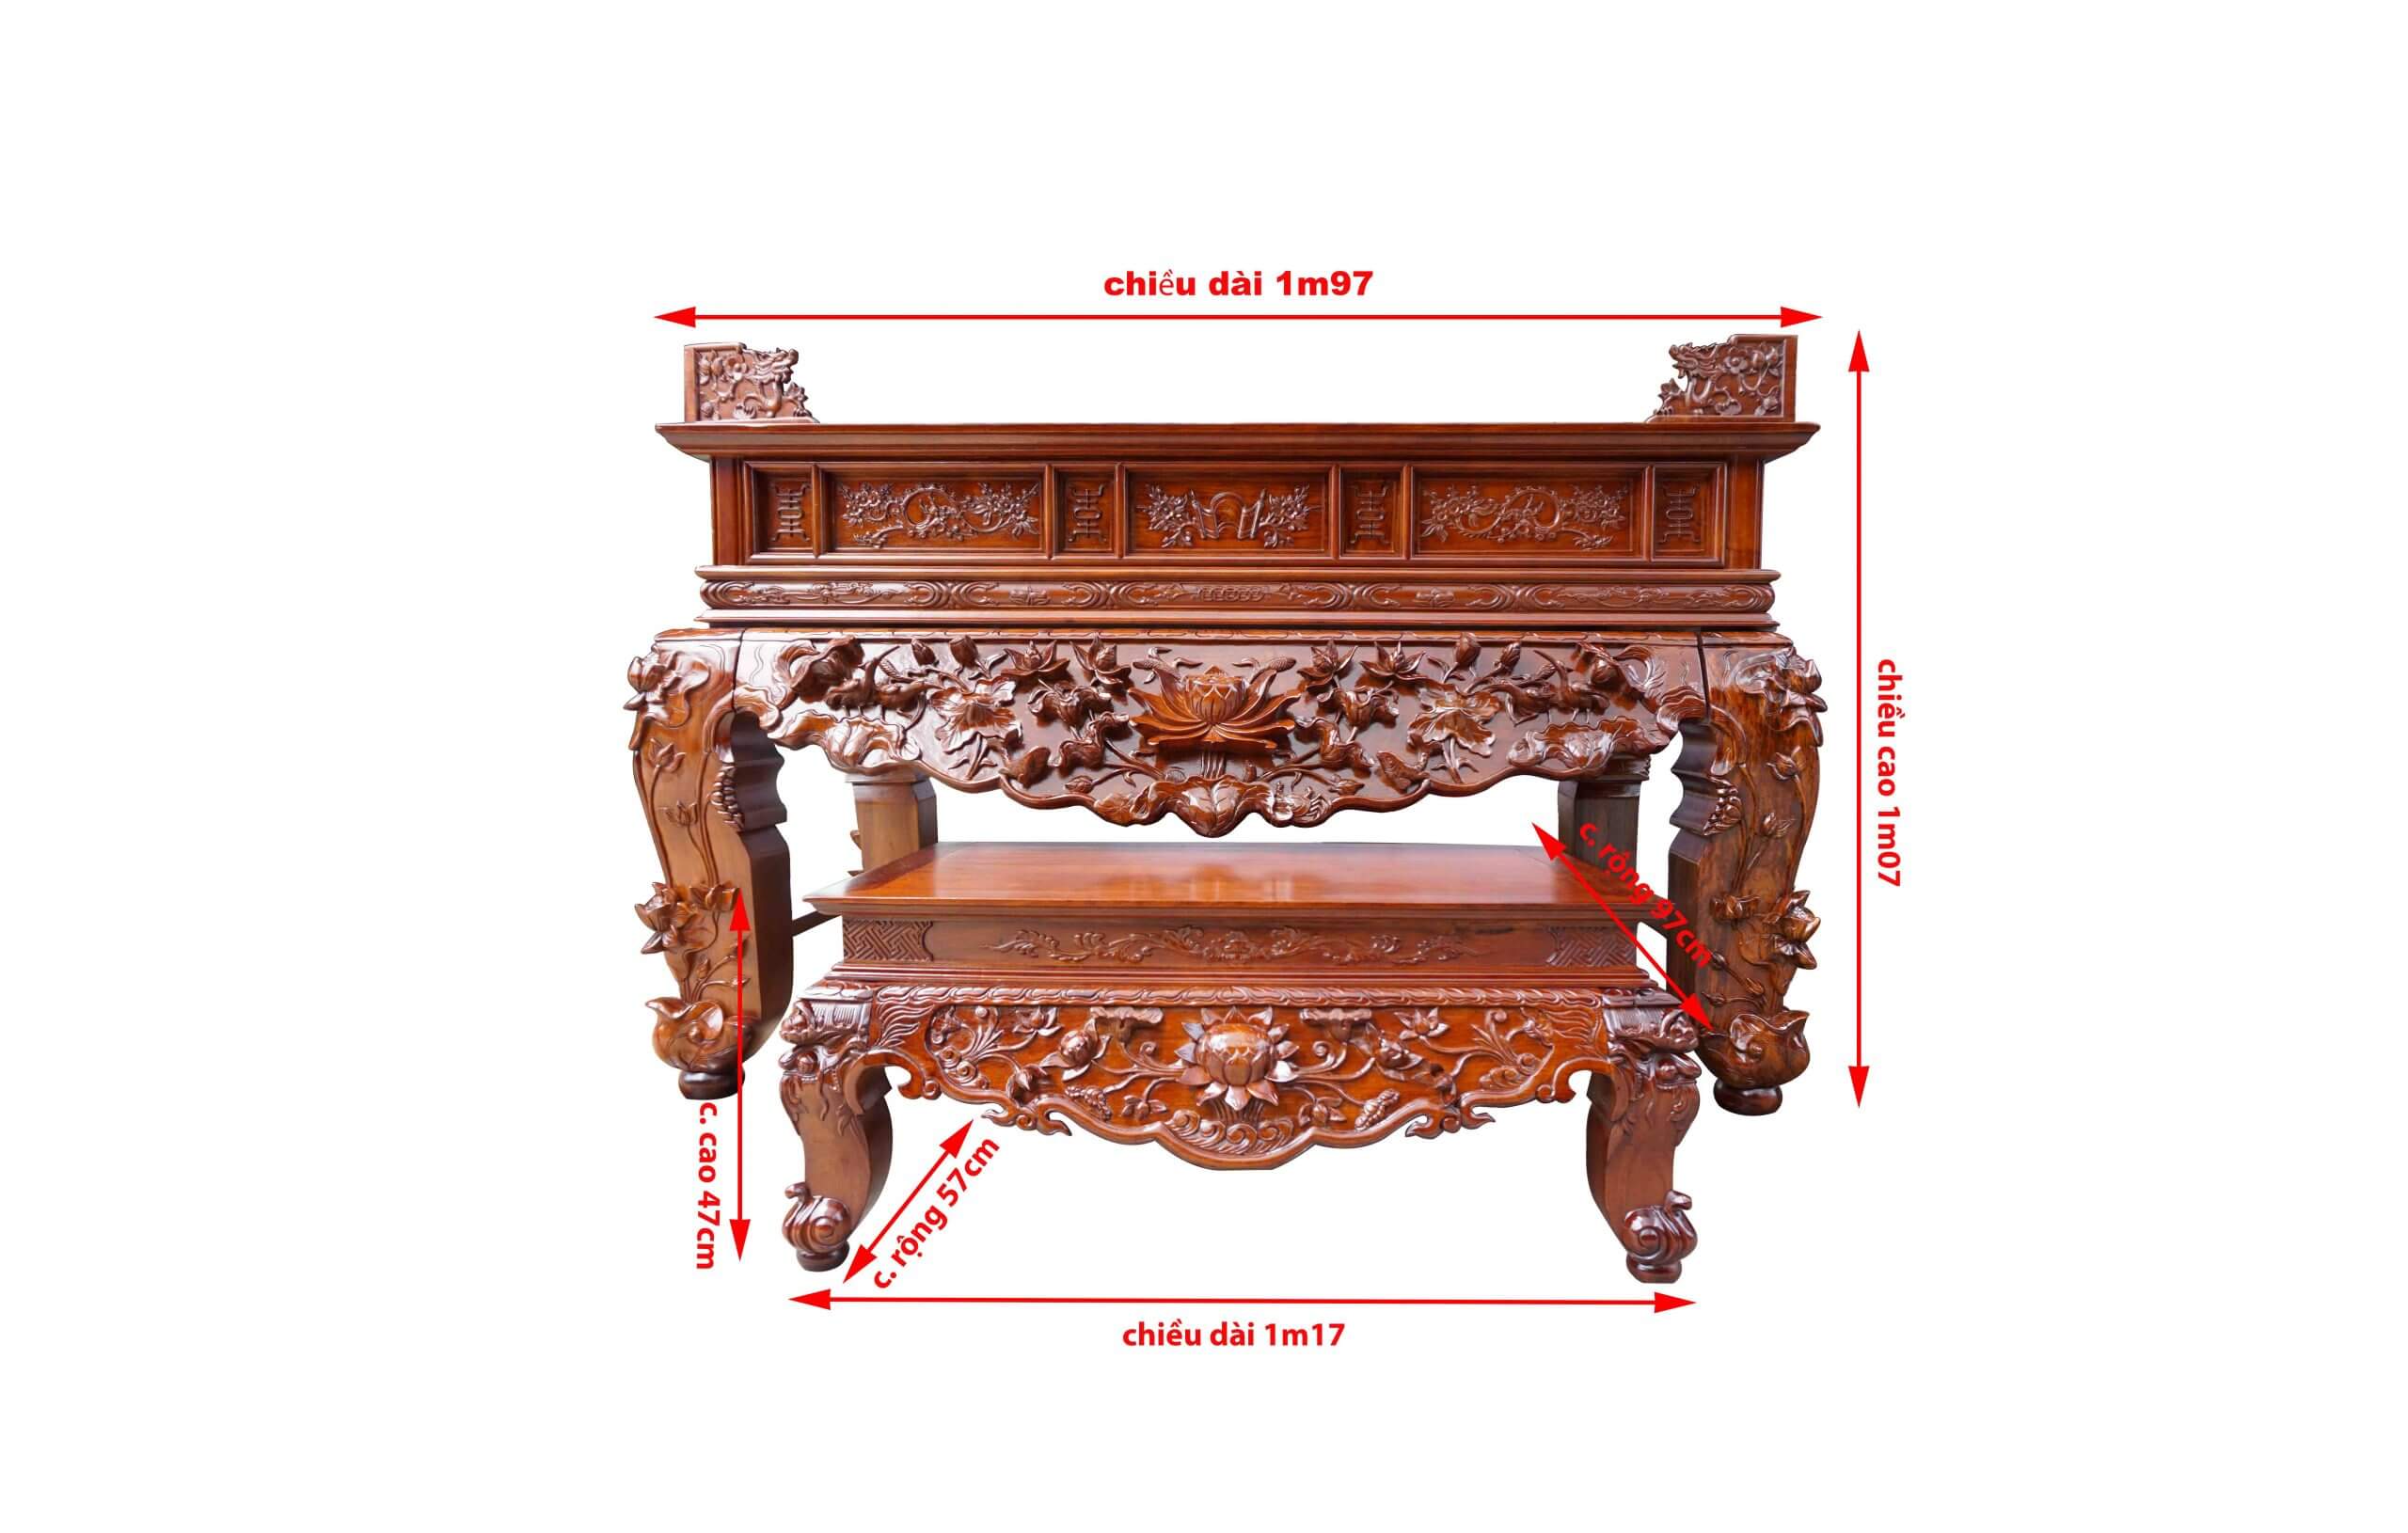 Cách chọn mua bàn thờ án gian gỗ đẹp chất lượng tại Nghệ An